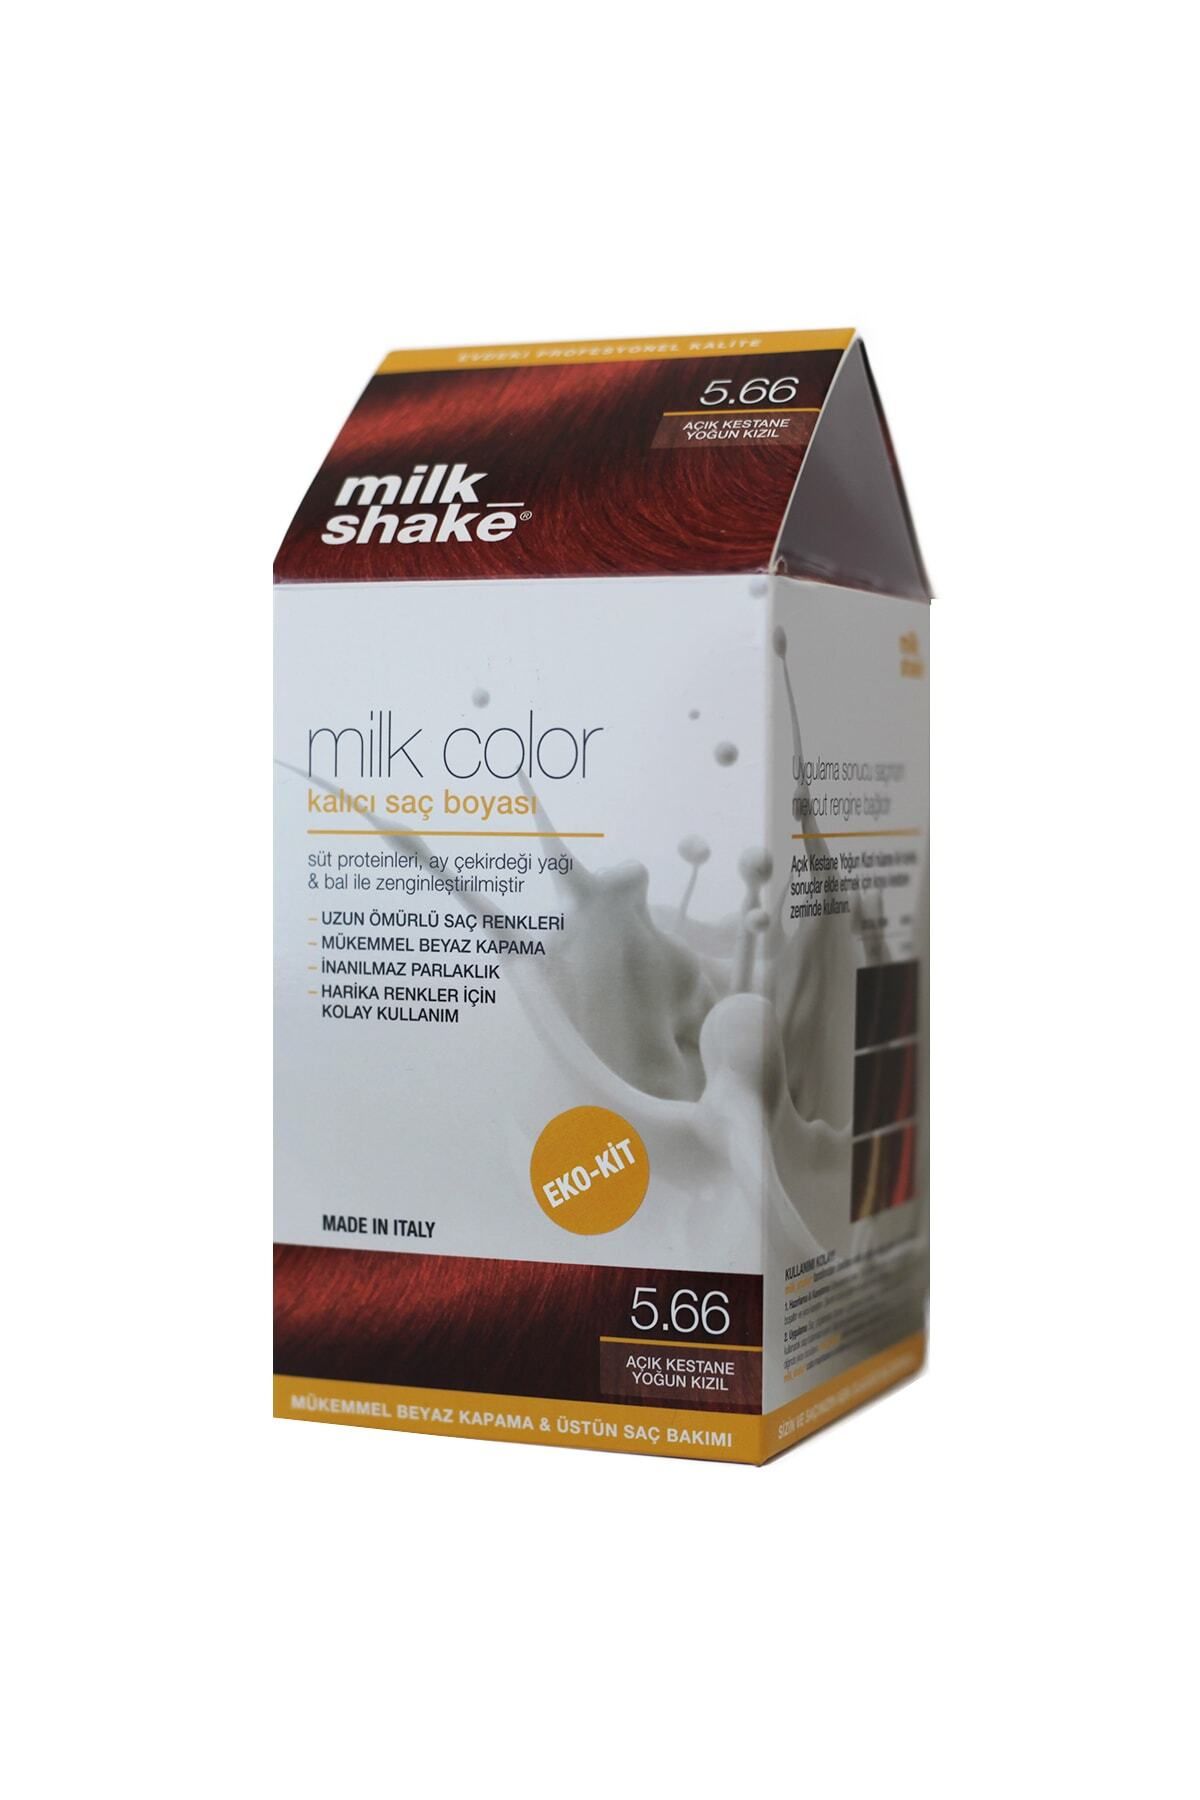 Milkshake Milk_shake Milk Color Eko-kit Açık Kestane Yoğun Kızıl -5.66 (Köpüksüz)